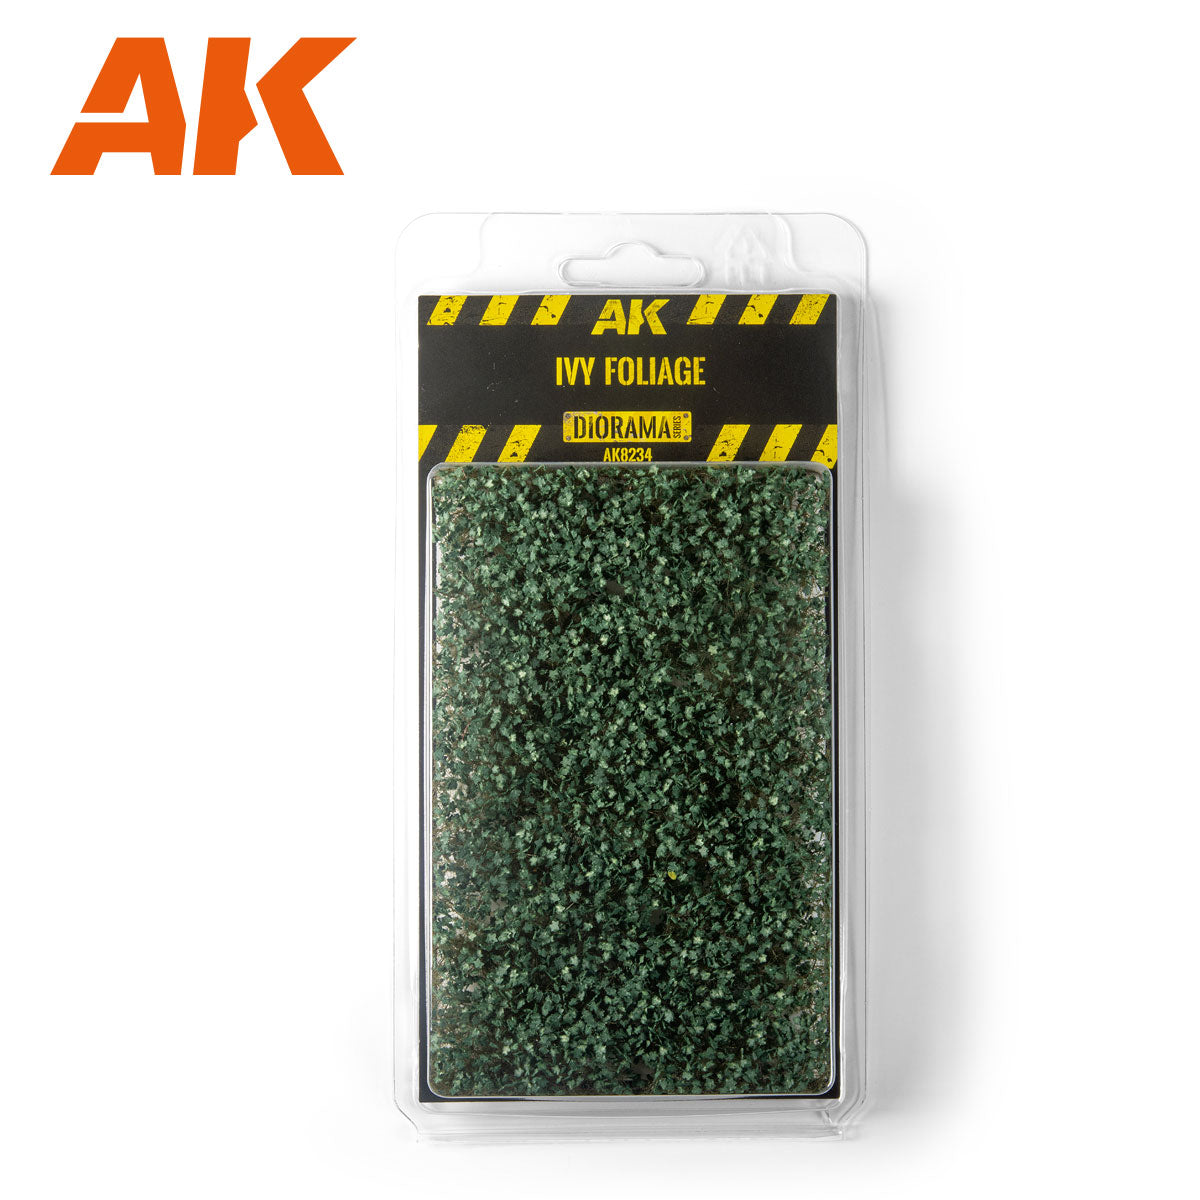 AK8234: Ivy Foliage